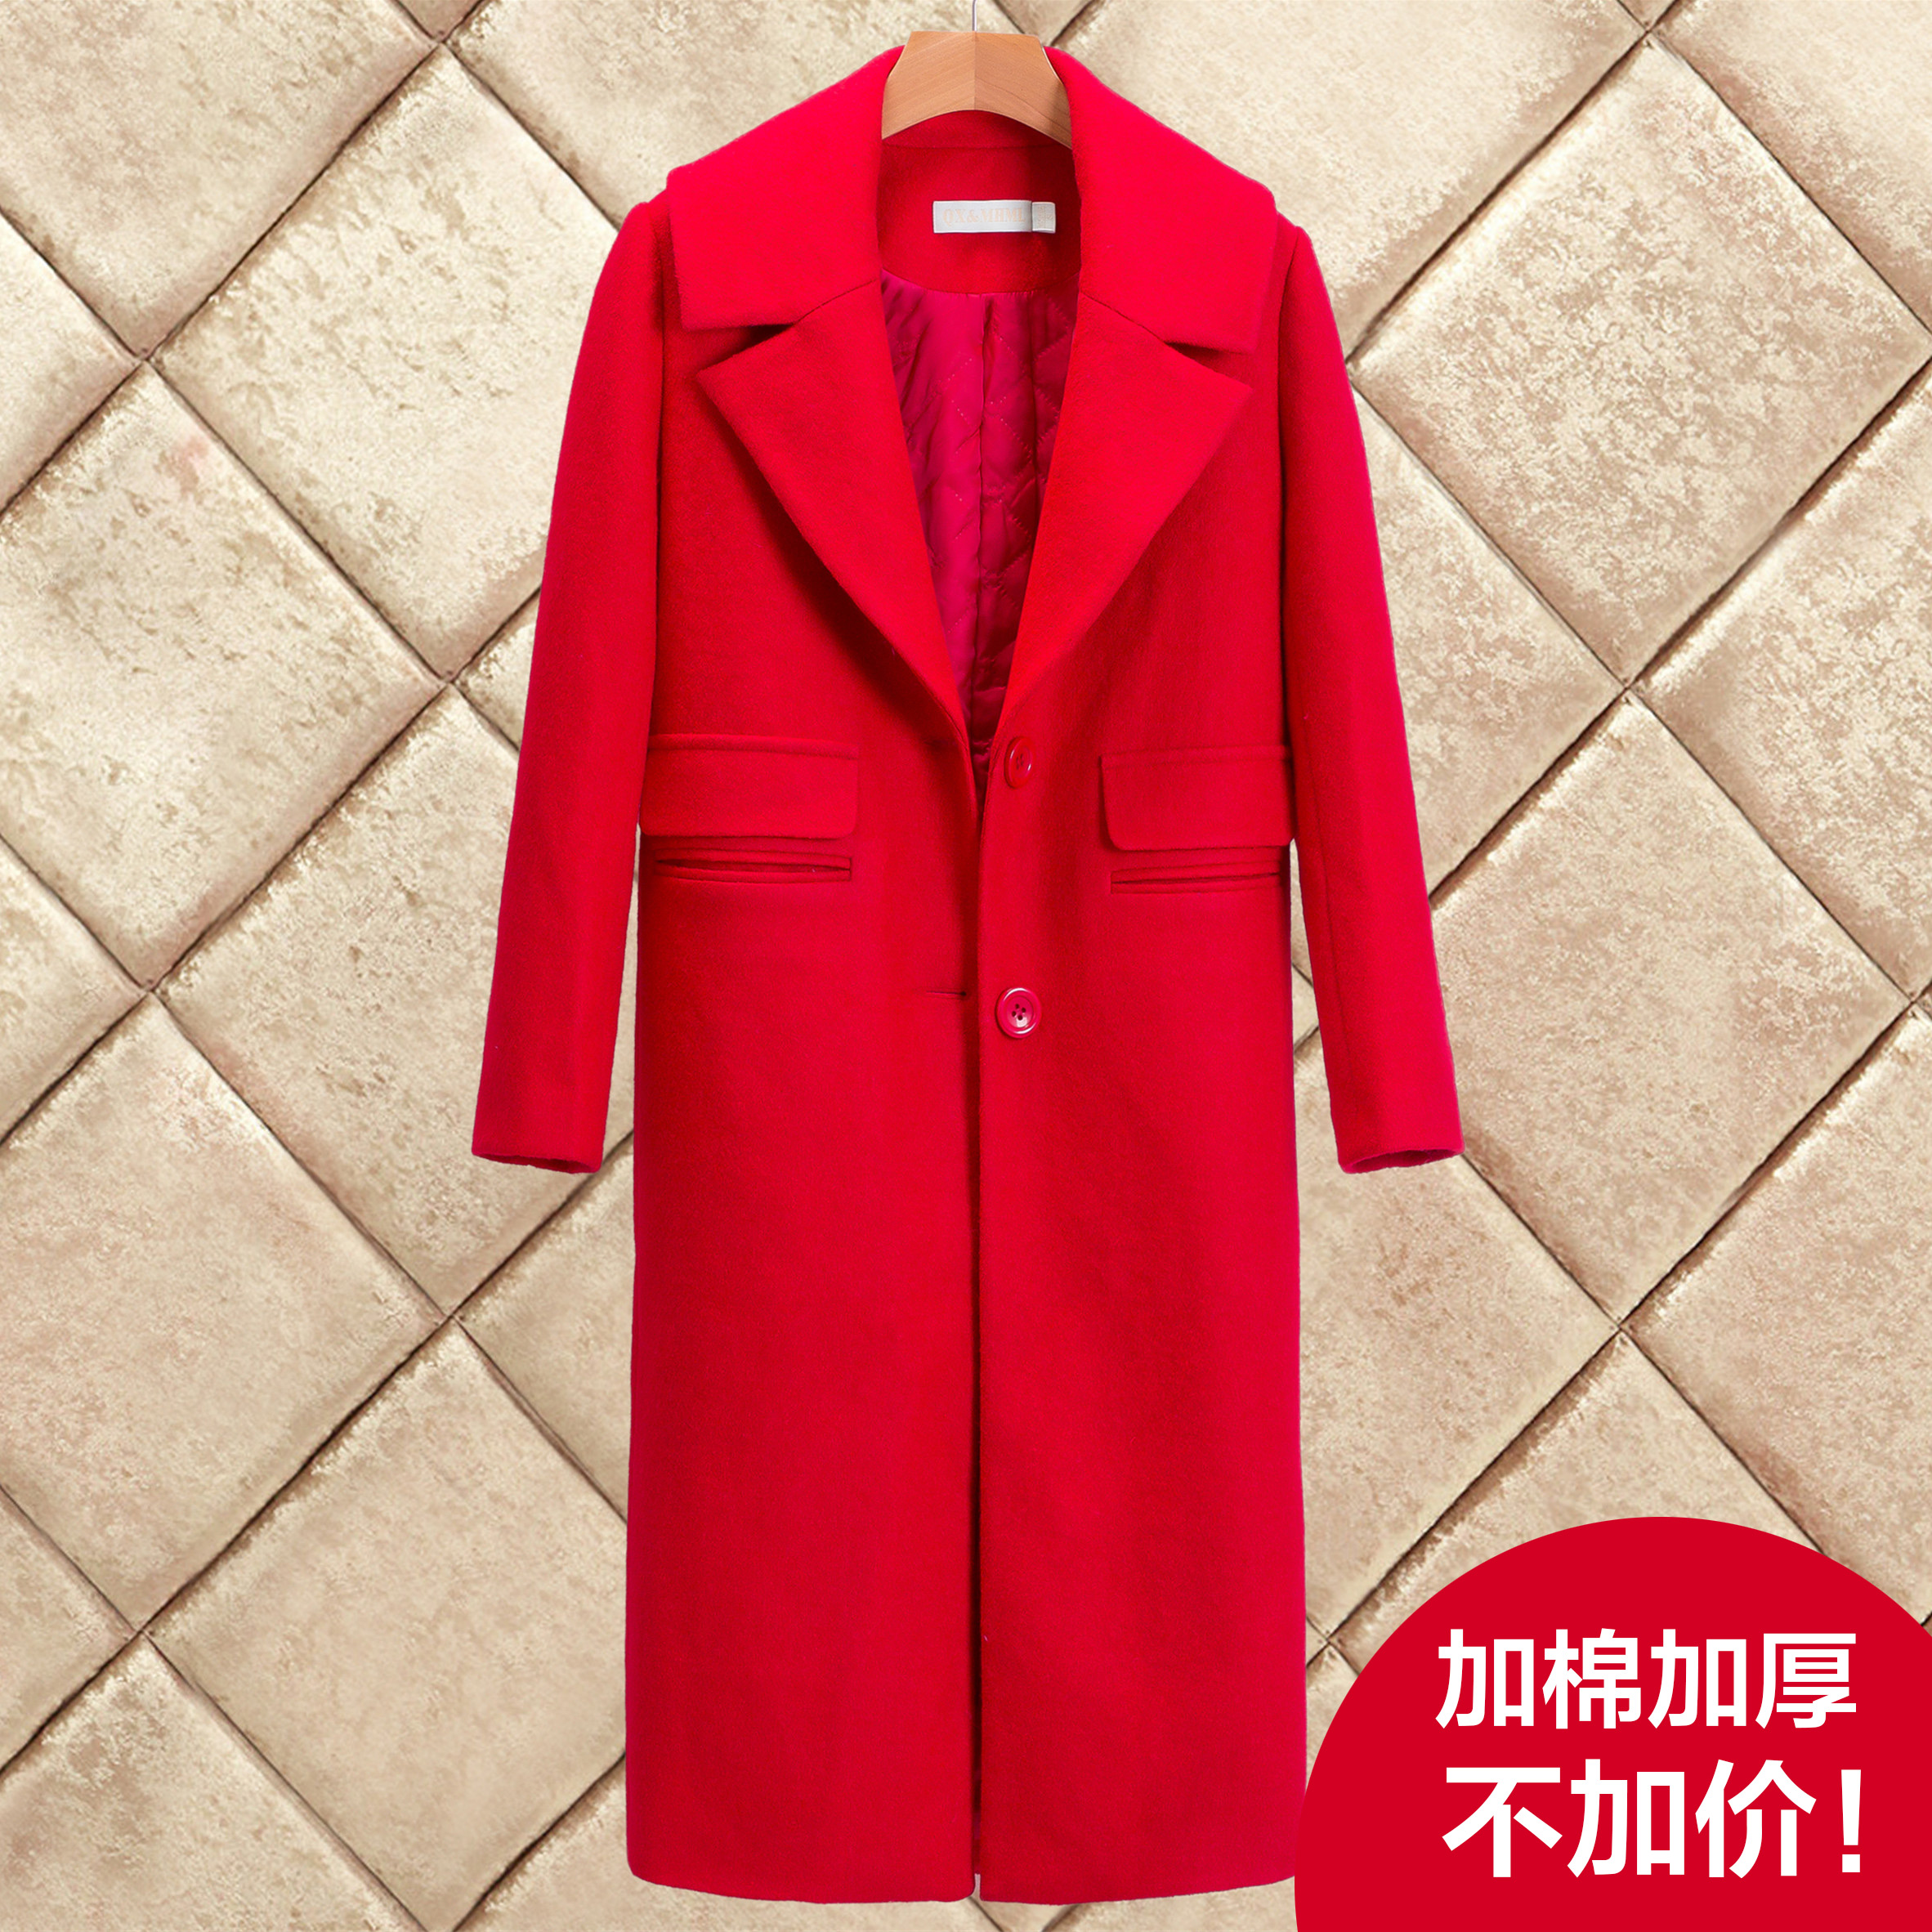 2016秋冬新款韩版中长款直筒羊毛显瘦红色加厚毛呢外套女呢子大衣